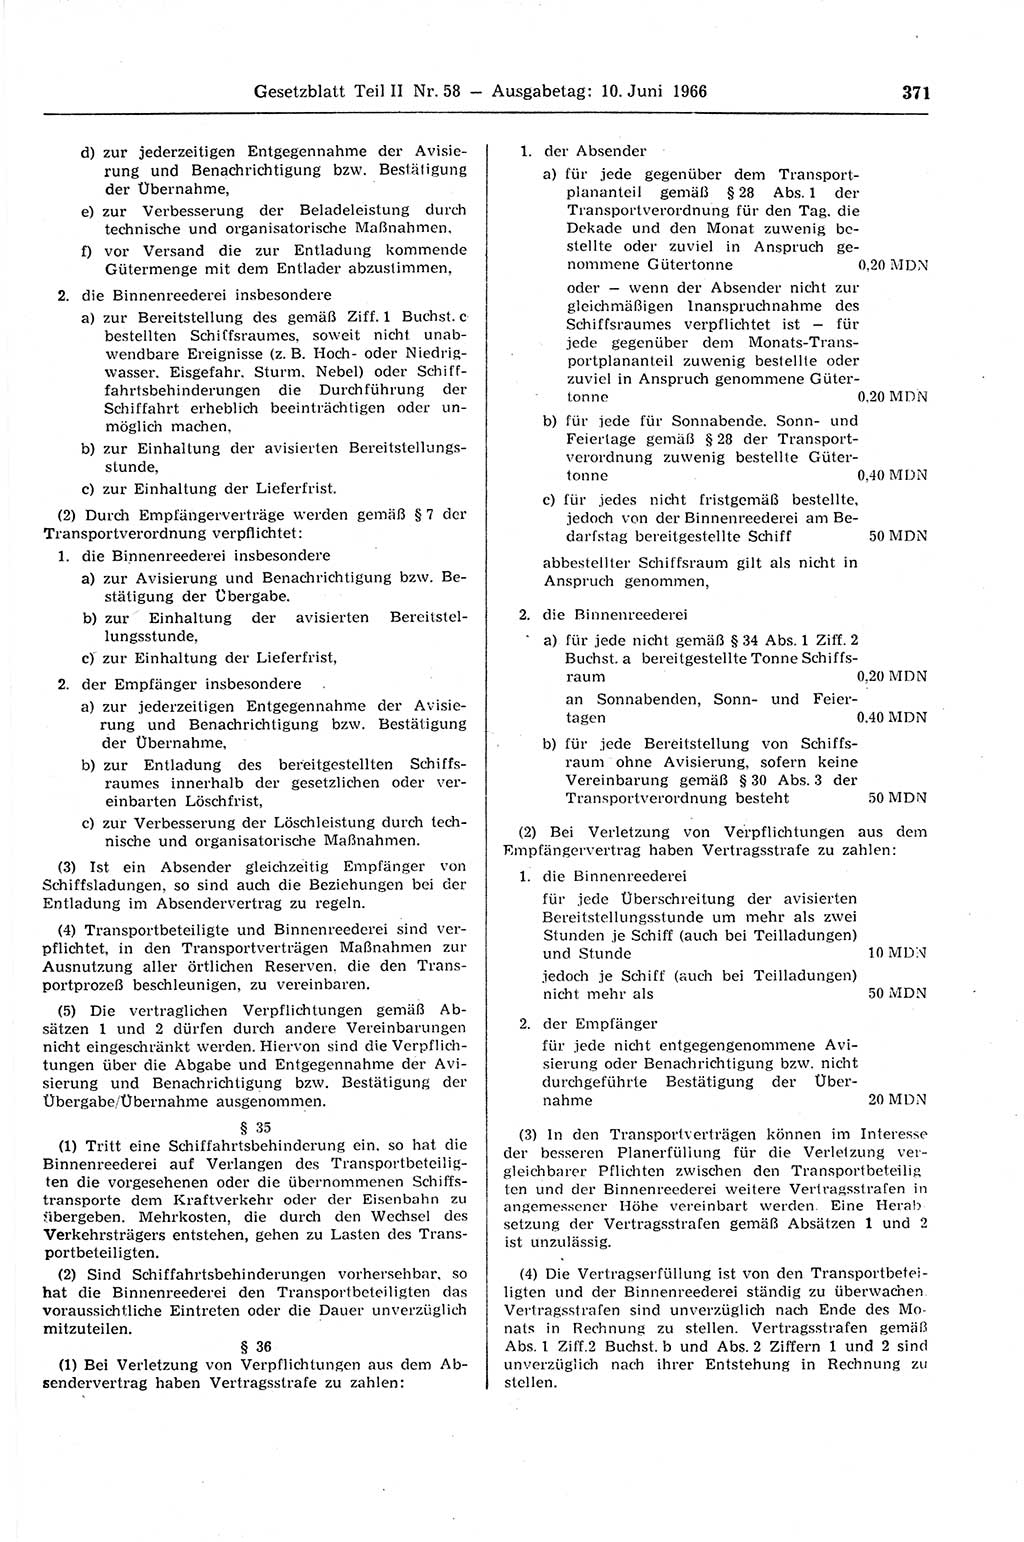 Gesetzblatt (GBl.) der Deutschen Demokratischen Republik (DDR) Teil ⅠⅠ 1966, Seite 371 (GBl. DDR ⅠⅠ 1966, S. 371)